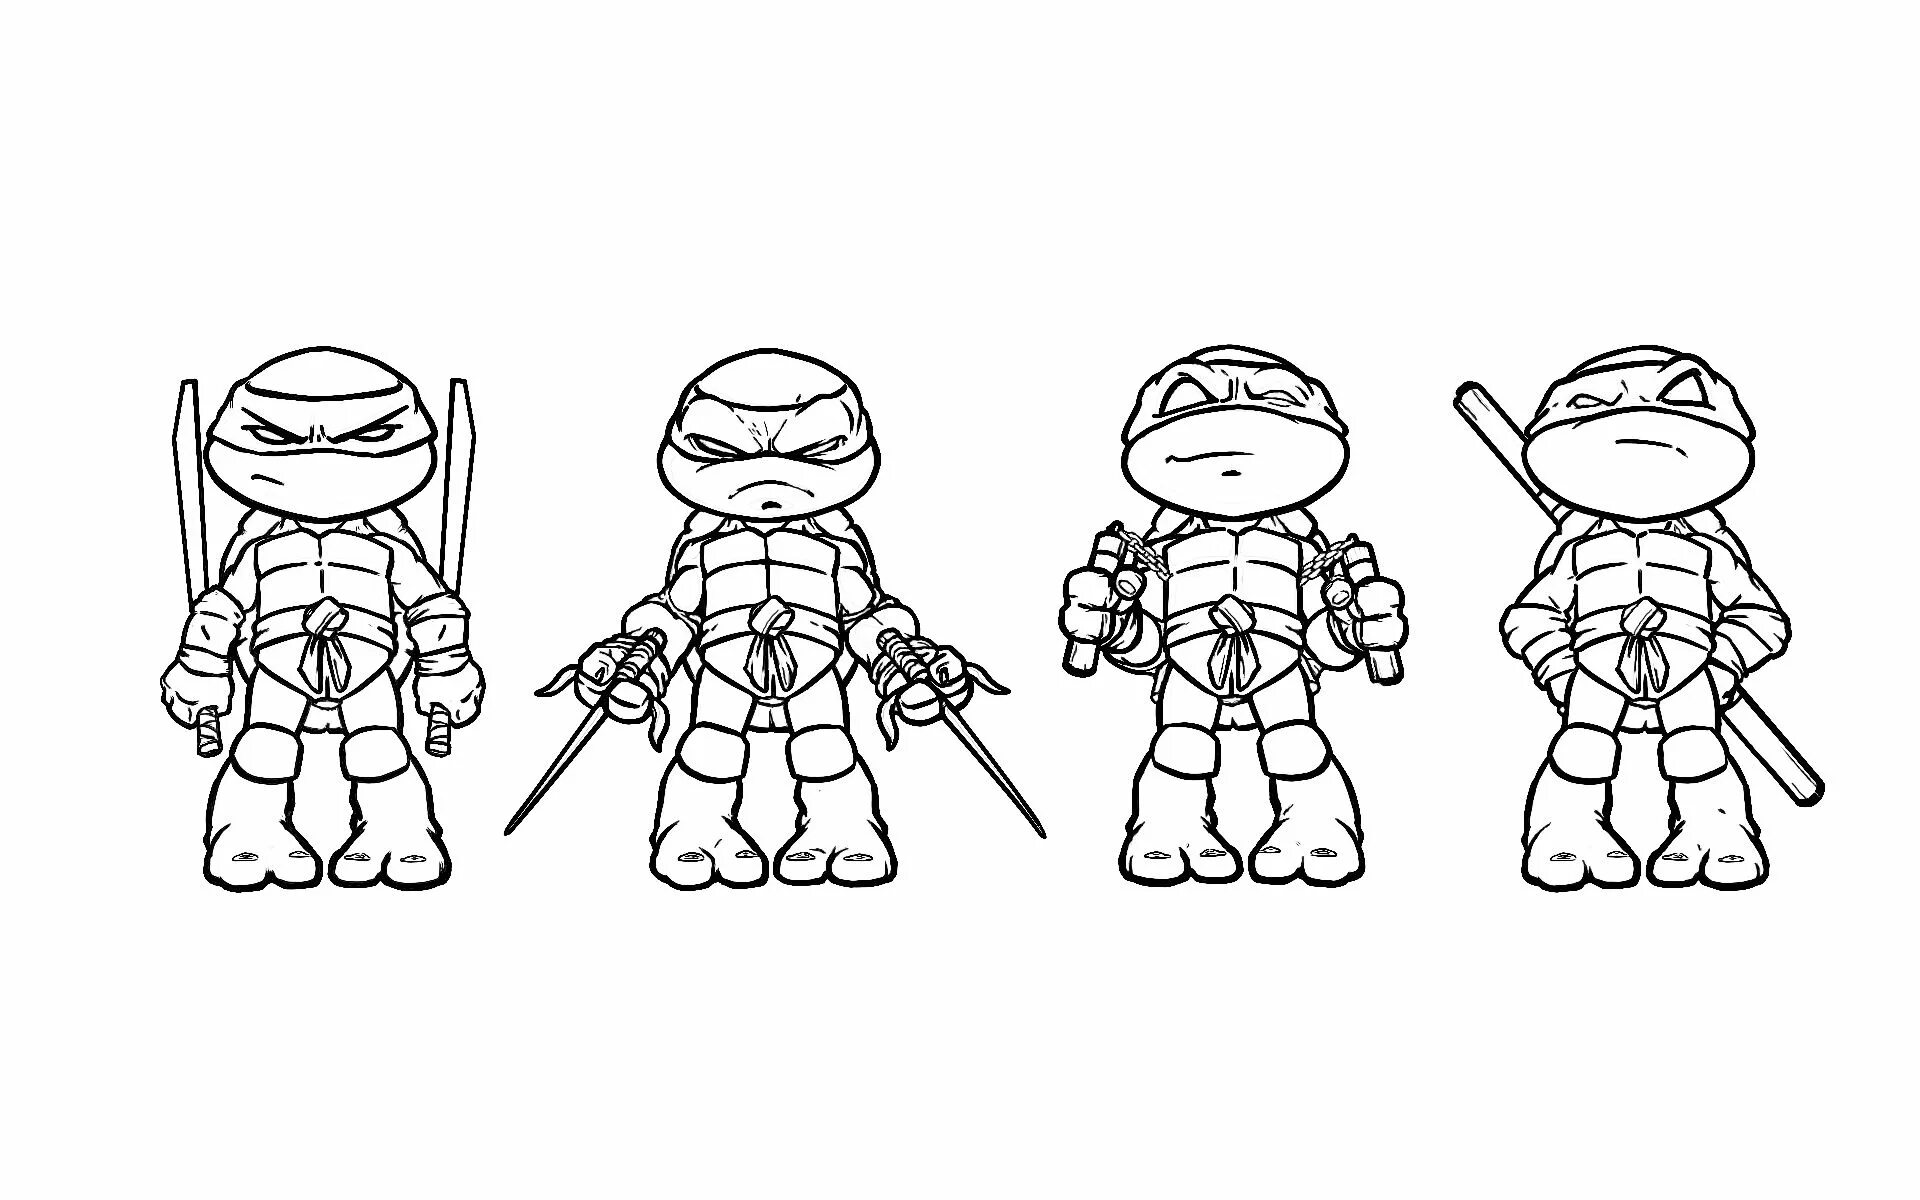 Teenage Mutant Ninja Turtles coloring page